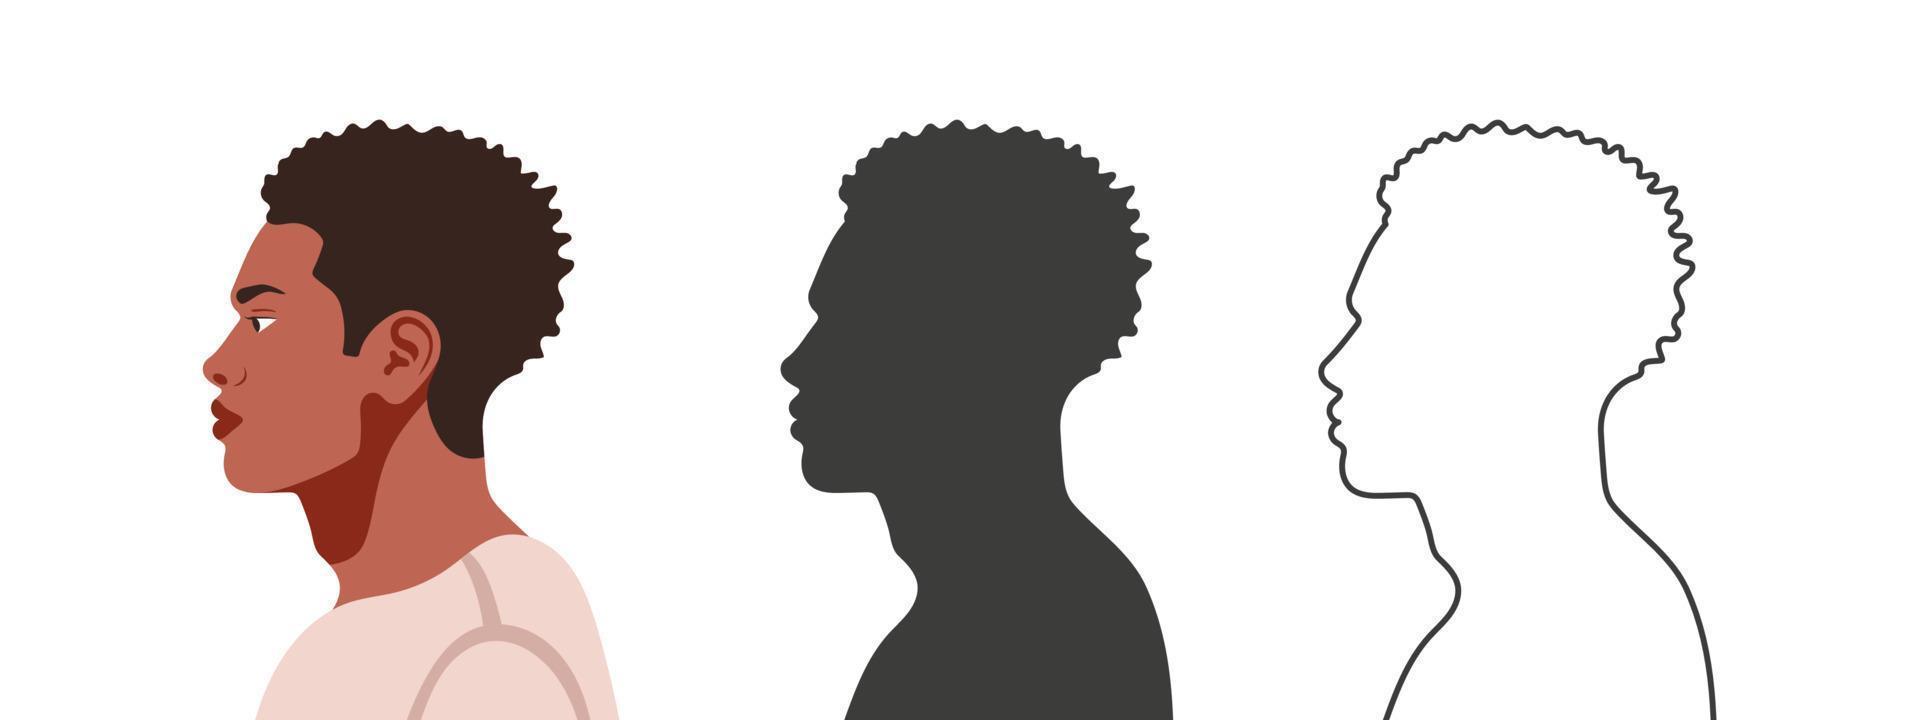 Köpfe im Profil. Gesicht von der Seite. Silhouetten von Menschen in drei verschiedenen Stilen. Profil eines Gesichts. Vektor-Illustration vektor